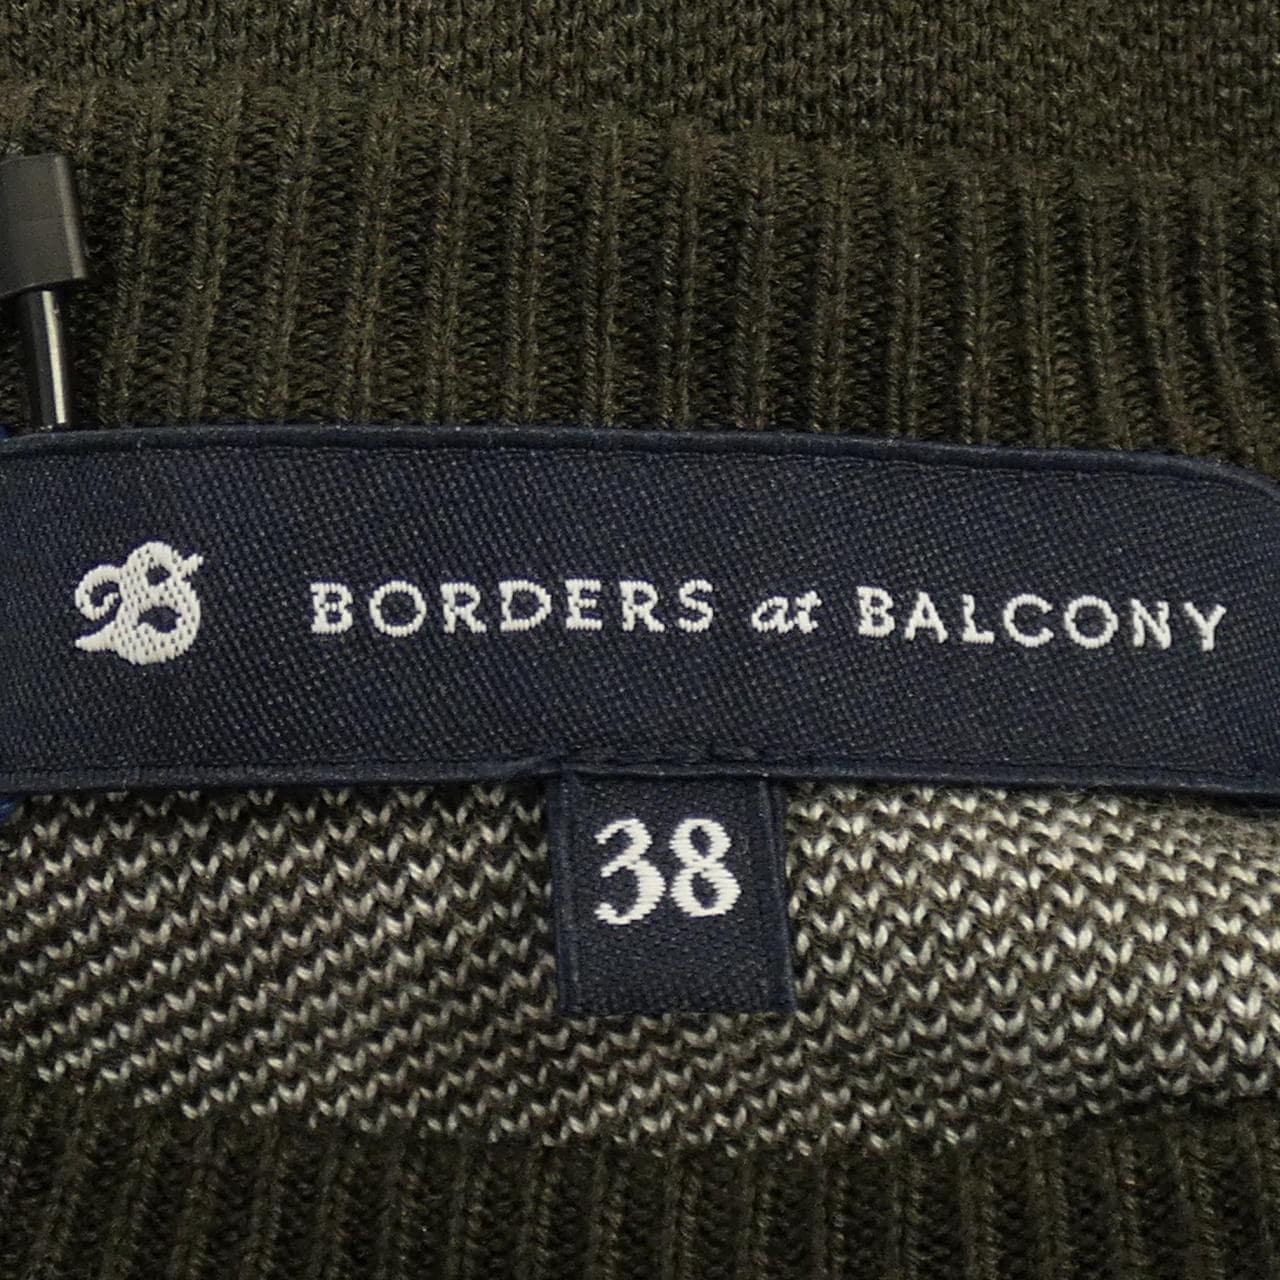 BORDER@BORDERS at BALCONY针织衫